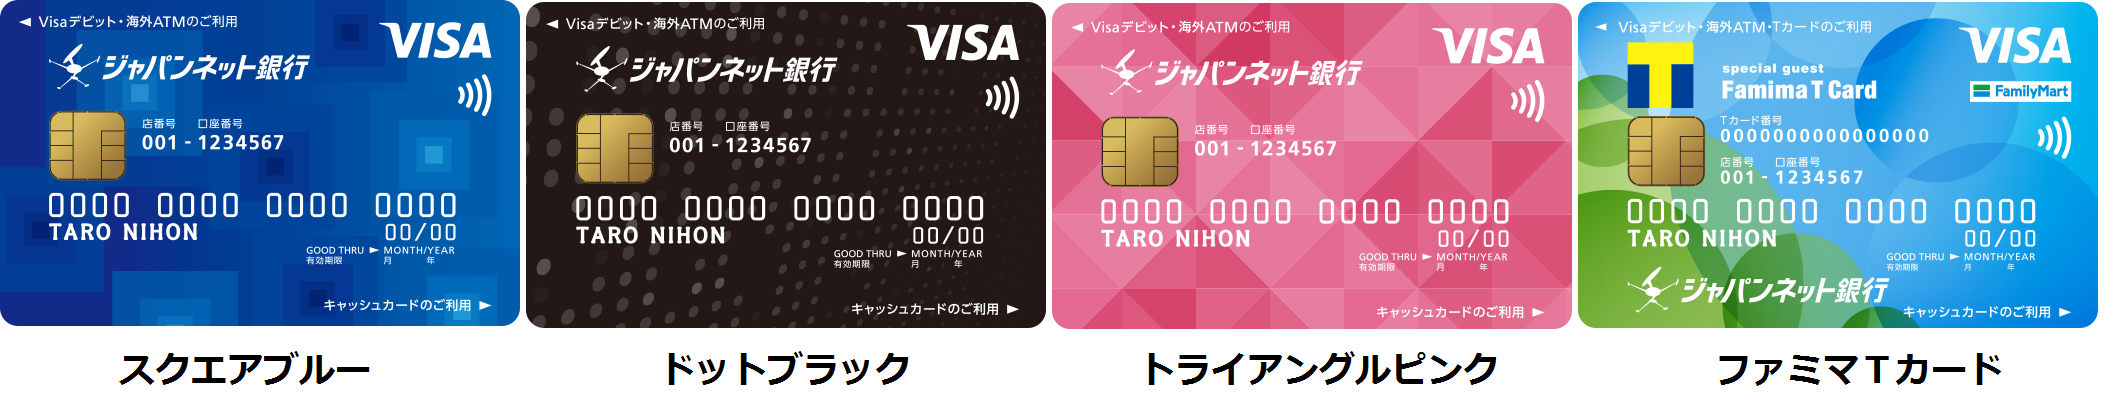 ジャパンネット銀行がキャッシュカードにvisaのタッチ決済を標準搭載 カードデザインも一新 株式会社ジャパンネット銀行のプレスリリース